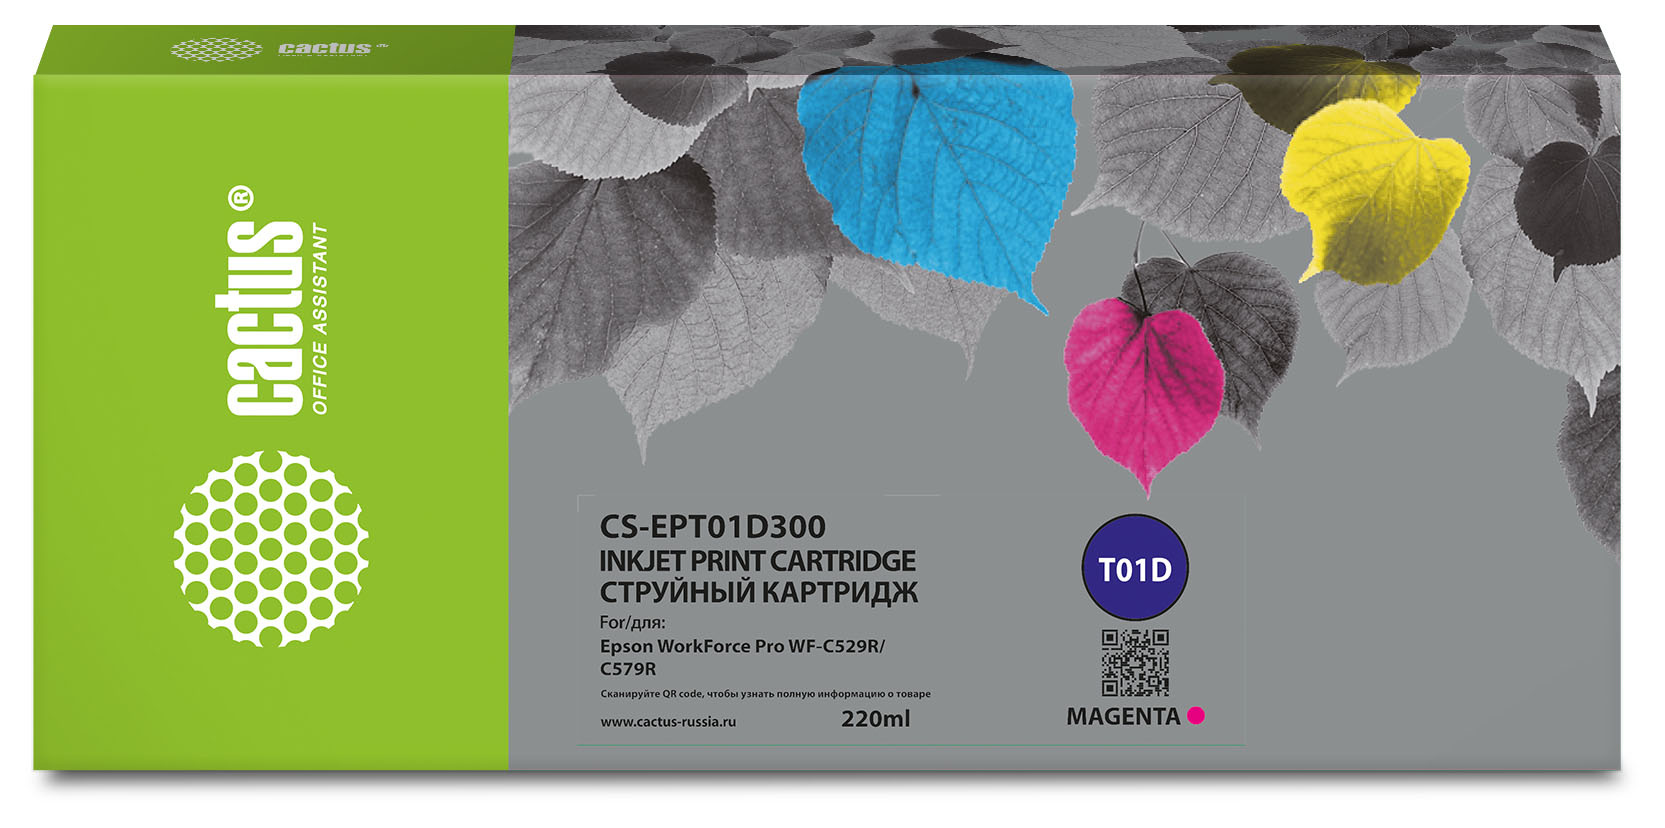 Картридж для струйного принтера CACTUS (CS-EPT01D300) пурпурный, совместимый